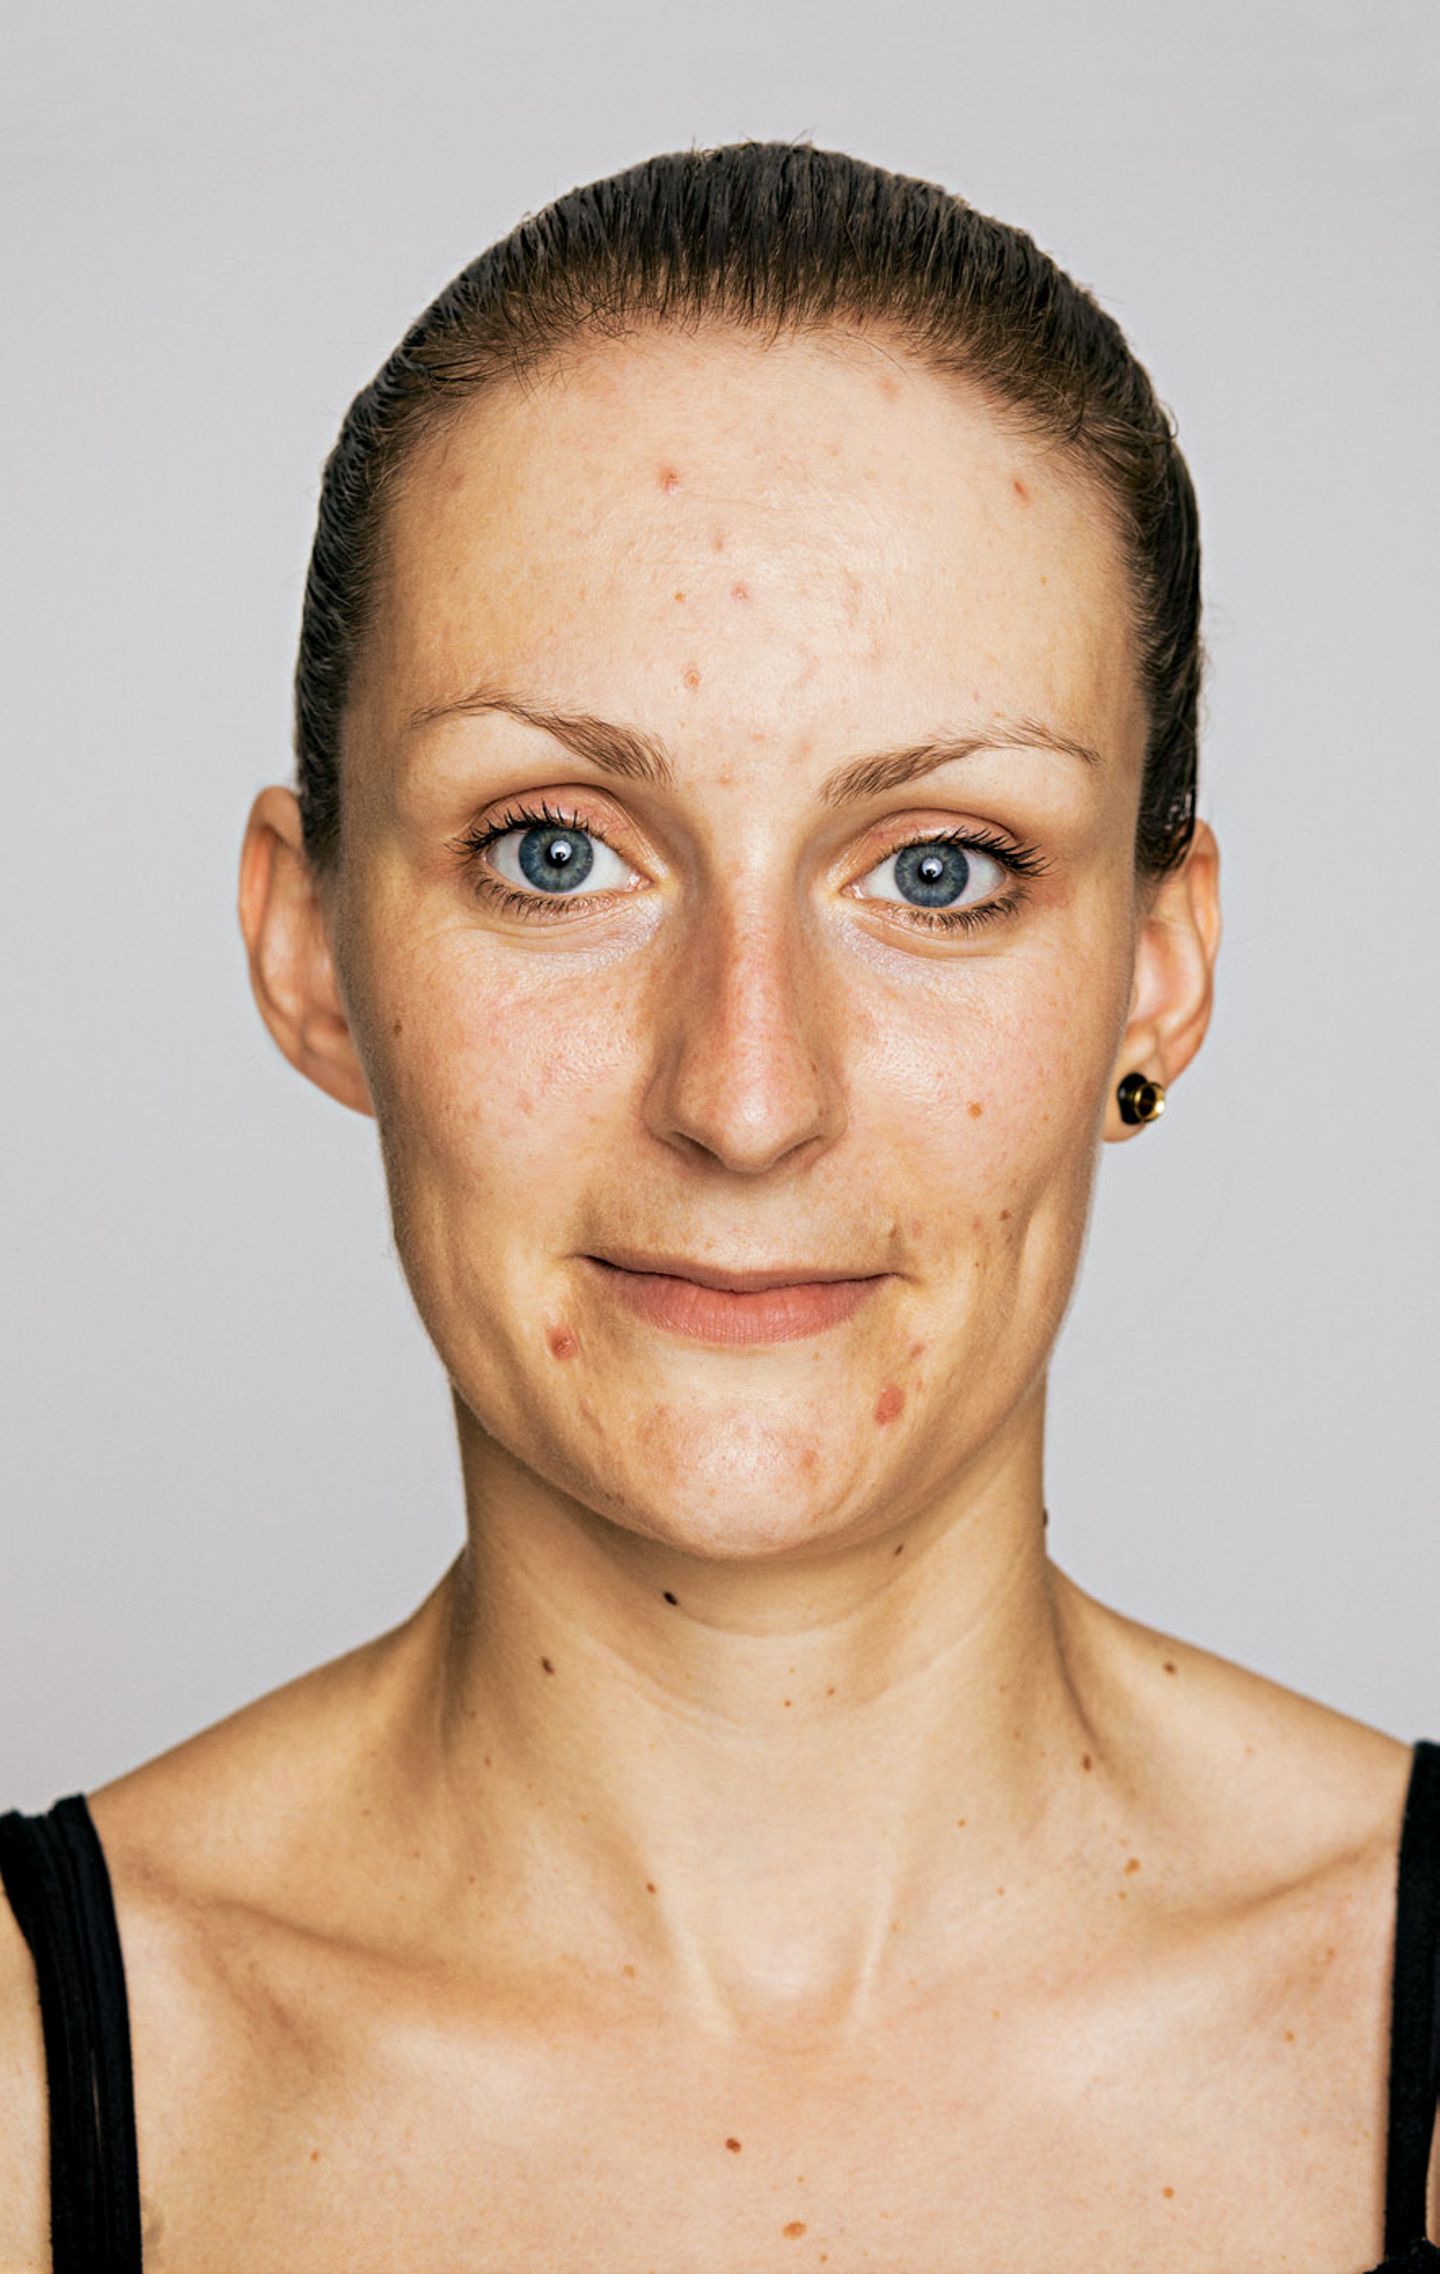 Hautbild verbessern: Hilfe gegen Akne, Falten und Co.: Spätakne vorher